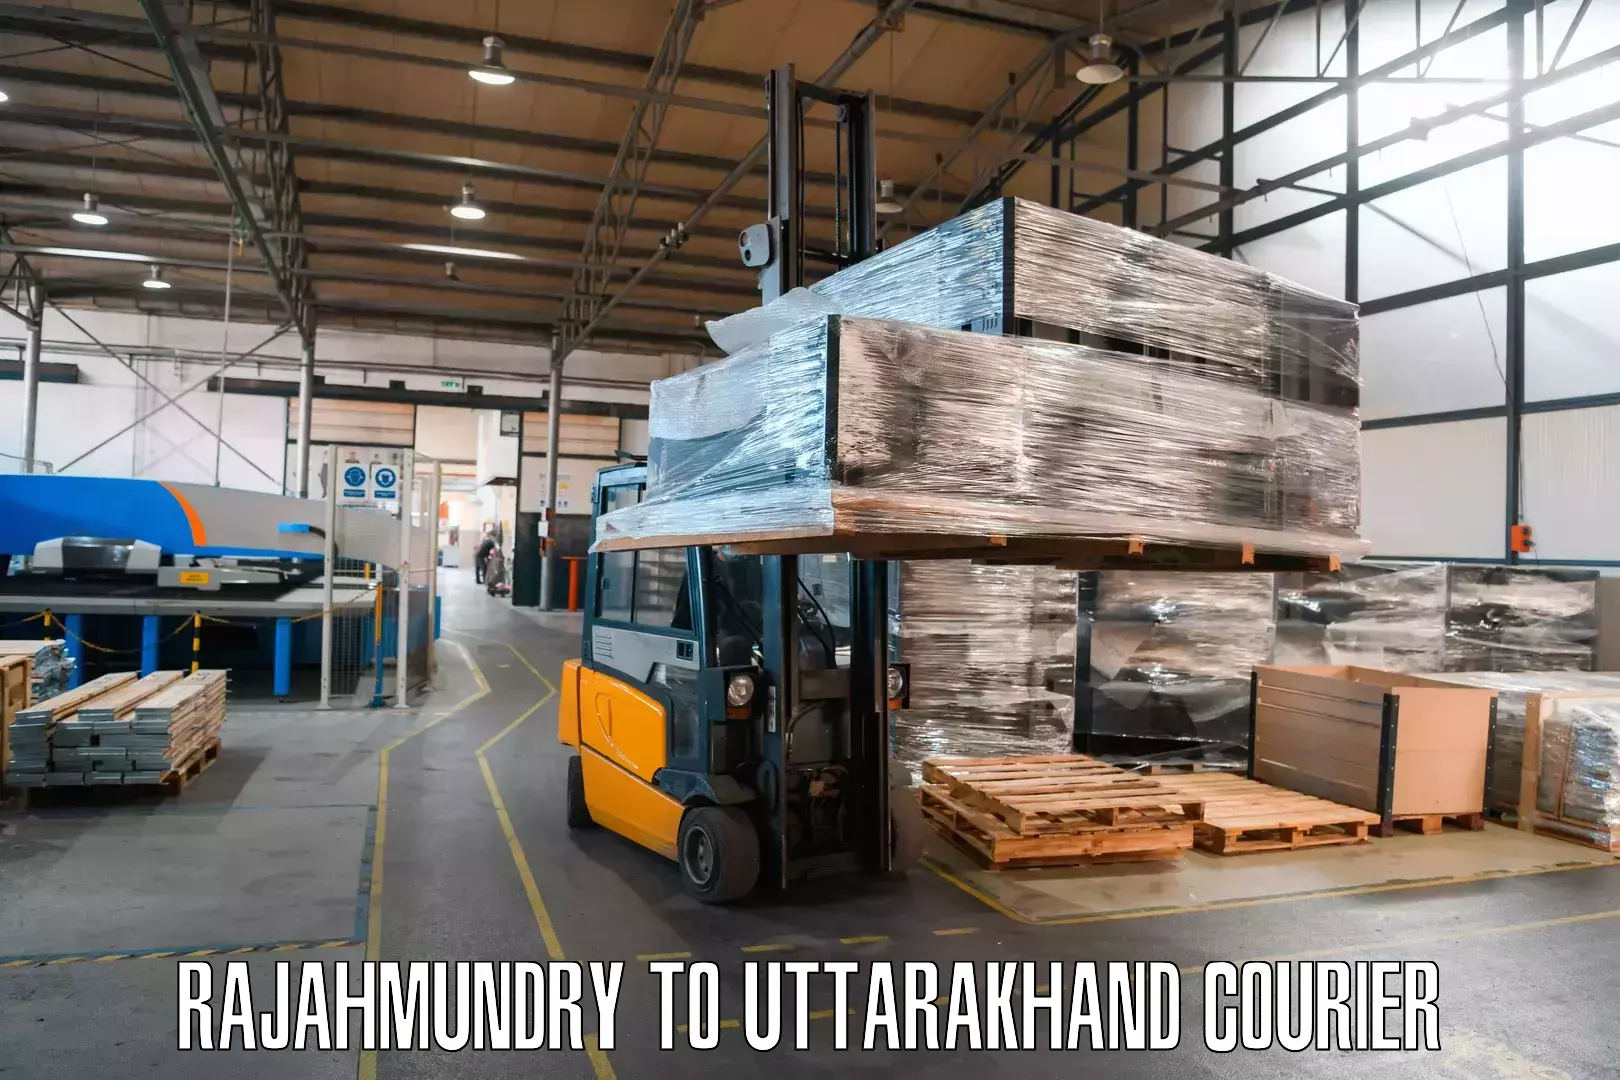 E-commerce shipping partnerships Rajahmundry to Bageshwar